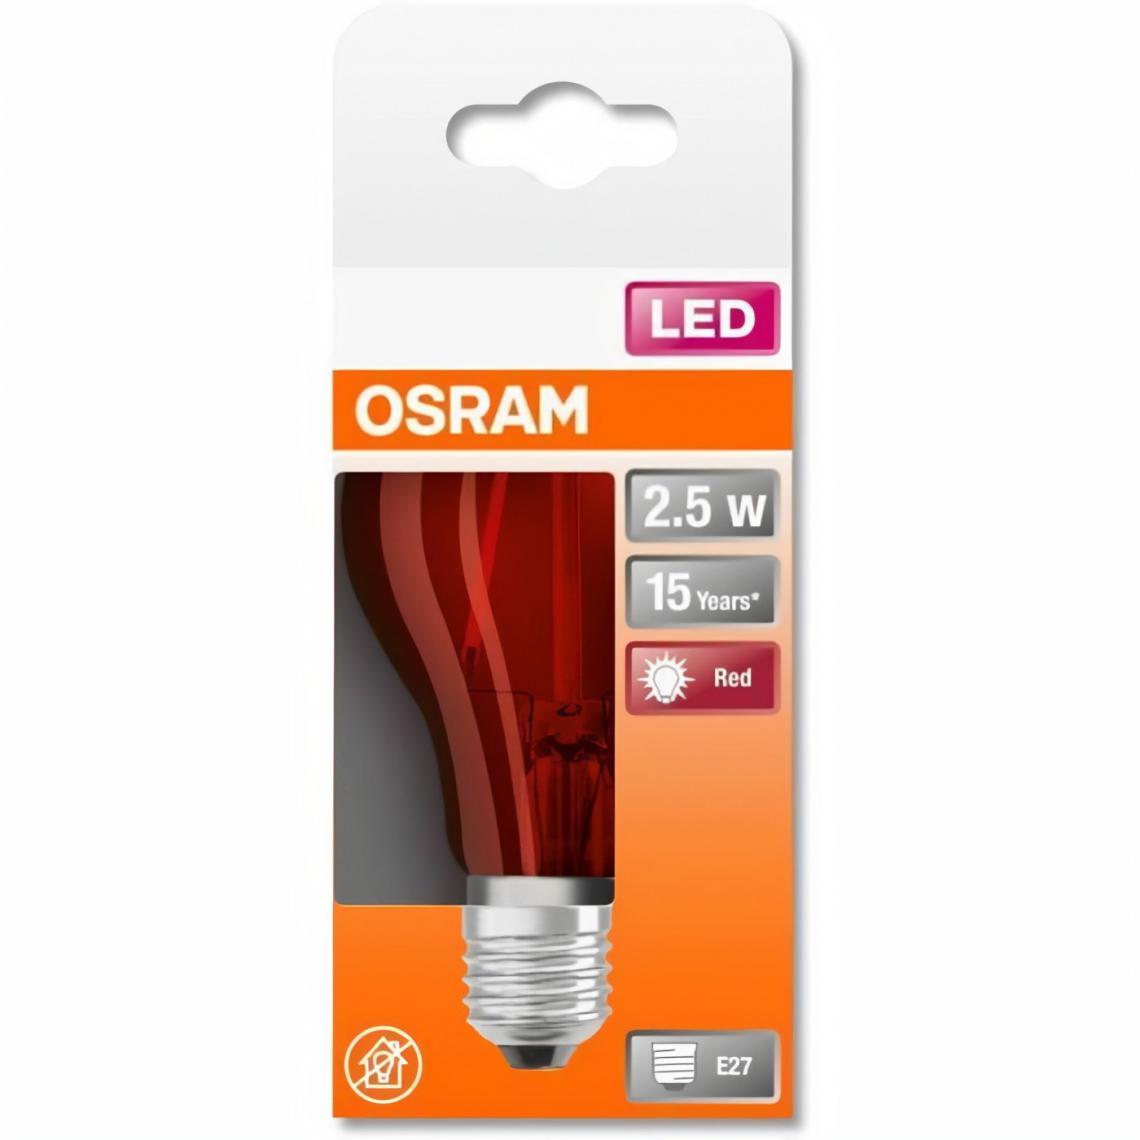 Osram - OSRAM Ampoule LED Standard verre rouge déco 2,5W=15 E27 chaud - Ampoules LED